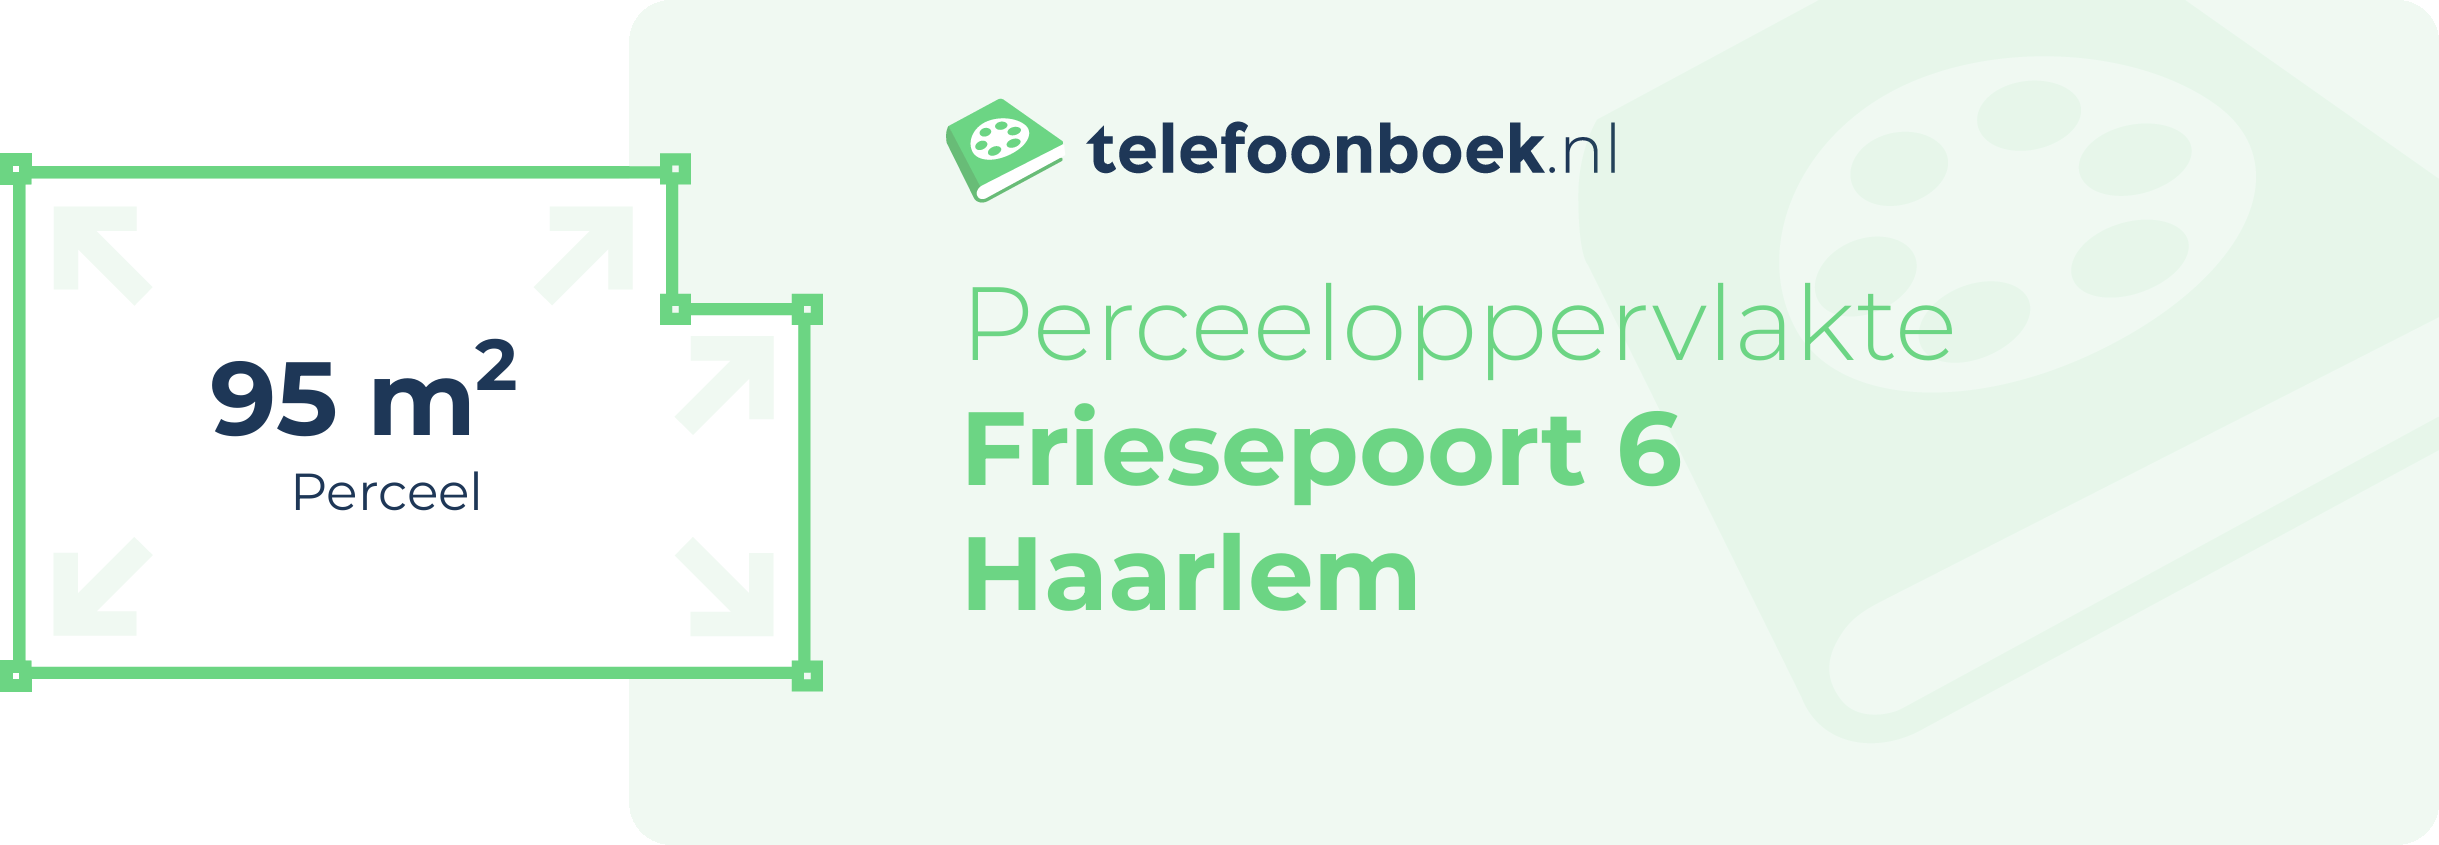 Perceeloppervlakte Friesepoort 6 Haarlem